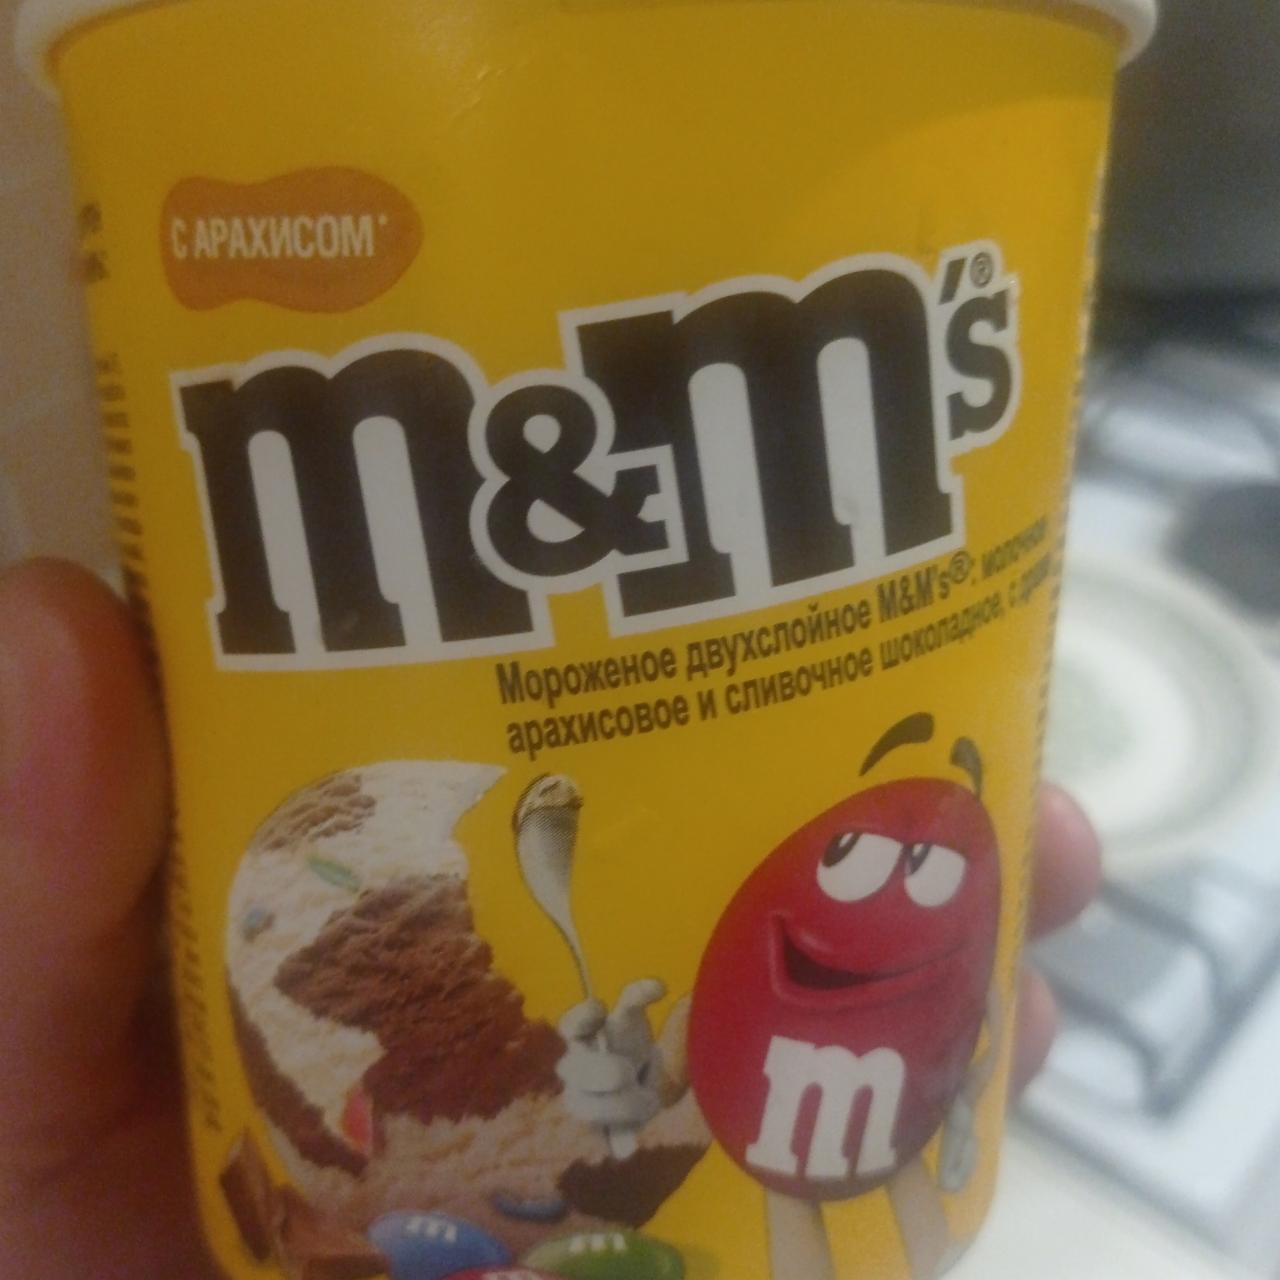 Фото - Мороженое двухслойное молочное арахисовое и сливочное шоколадное с драже M&M’s